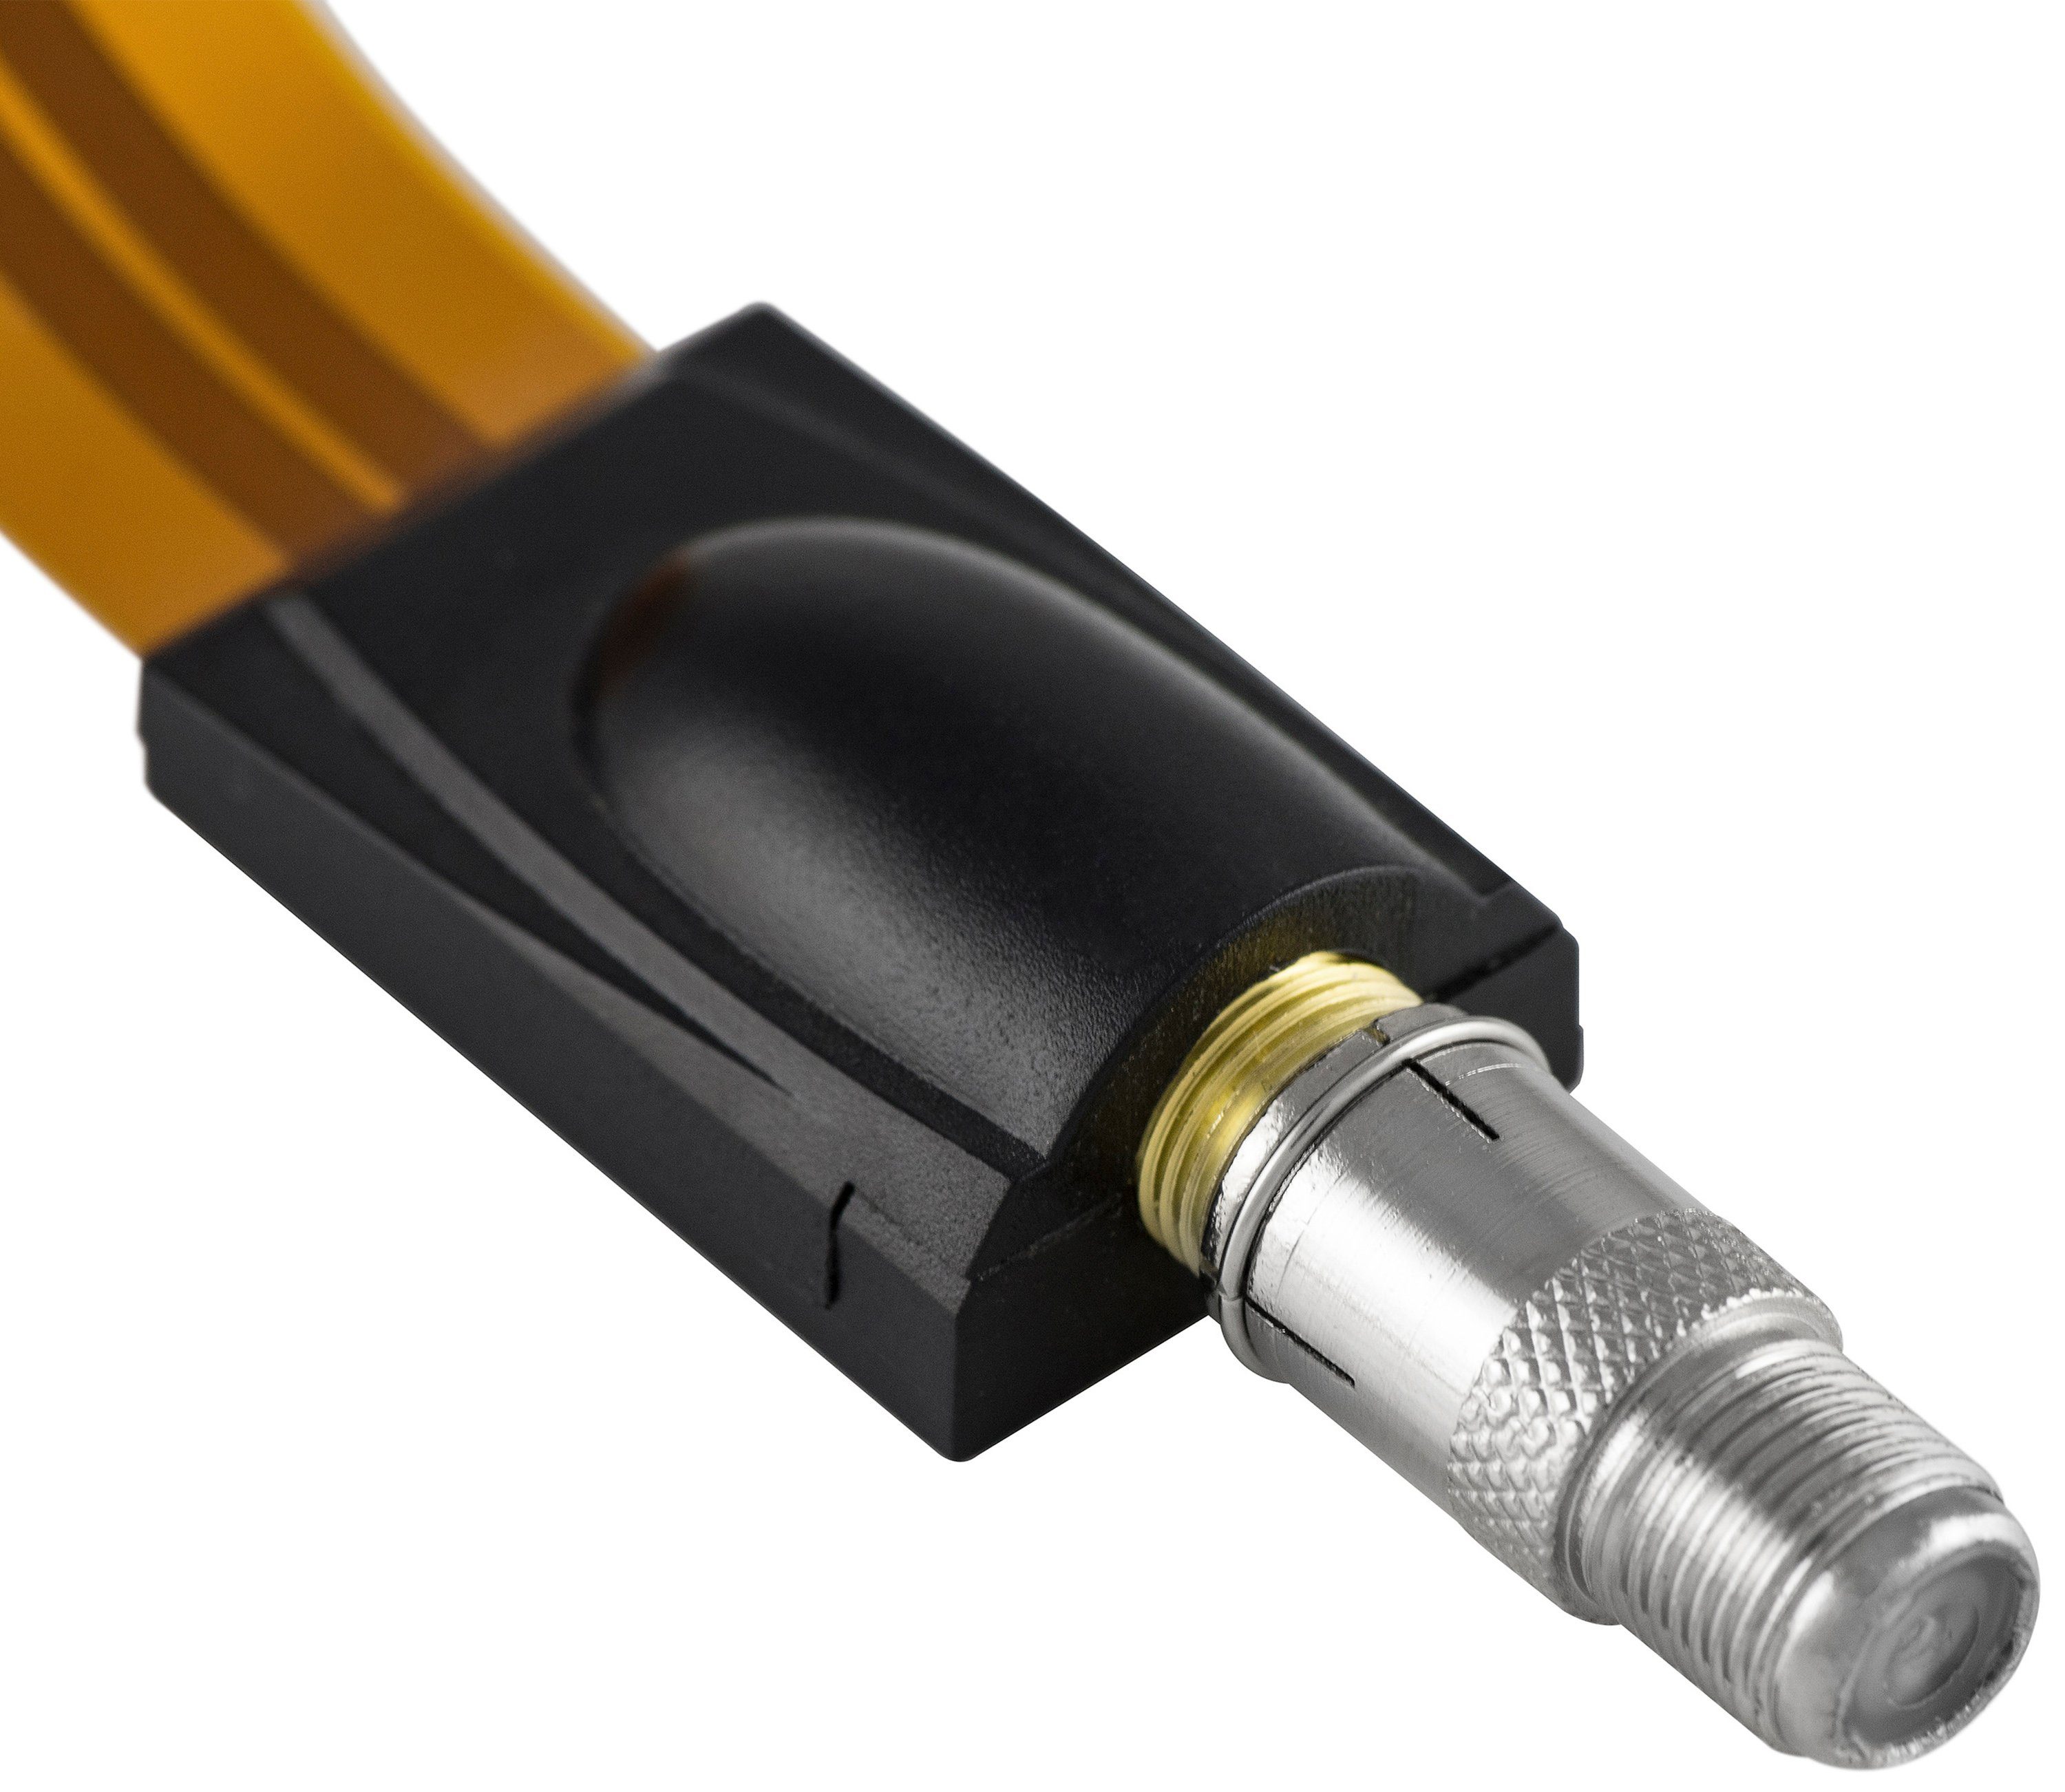 F-Buchse mit F-Quickstecker Kupplung SAT-Kabel, auf Silber Antennenkabel: Koaxialkabel F-Stecker und Coax Poppstar Schnellverbinder SAT für